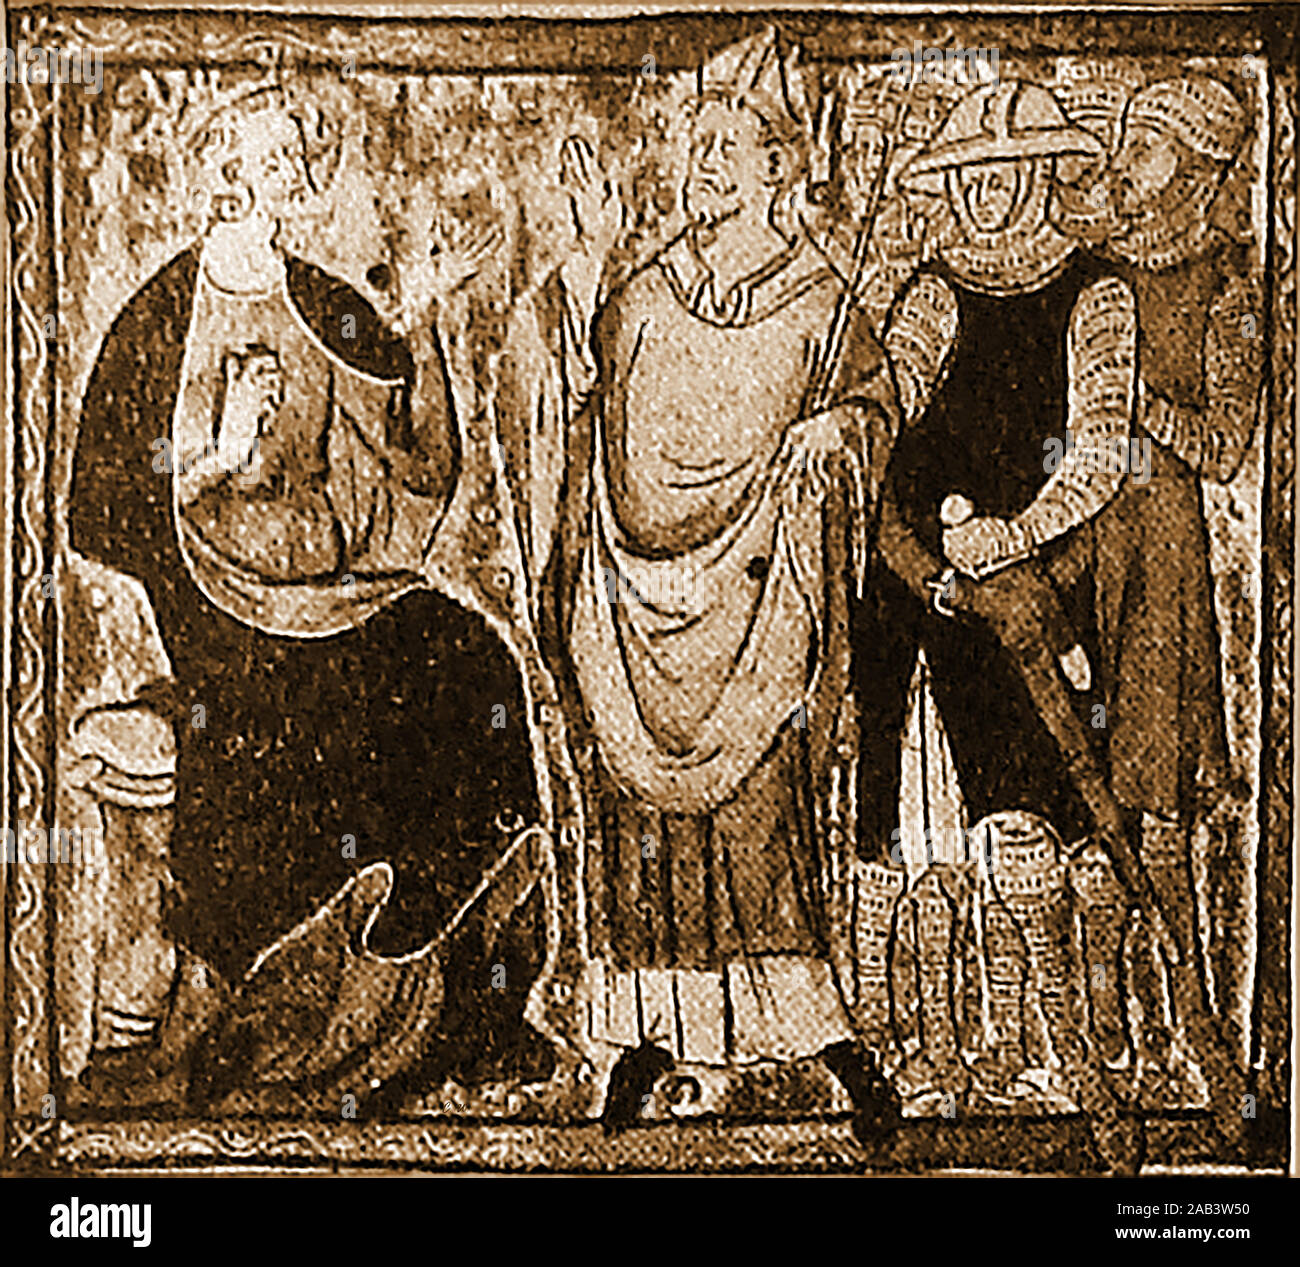 Eine alte Abbildung sagte zu dokumentieren eine Auseinandersetzung zwischen König Heinrich II. und Thomas Becket (auch bekannt als der heilige Thomas von Canterbury, Thomas von London und Thomas à Becket -1119-1170). Sie wurden in regelmäßigen Streit über die Rechte und Privilegien der Kirche schließlich zu seiner Ermordung von Männern des Königs in der Kathedrale von Canterbury. Stockfoto